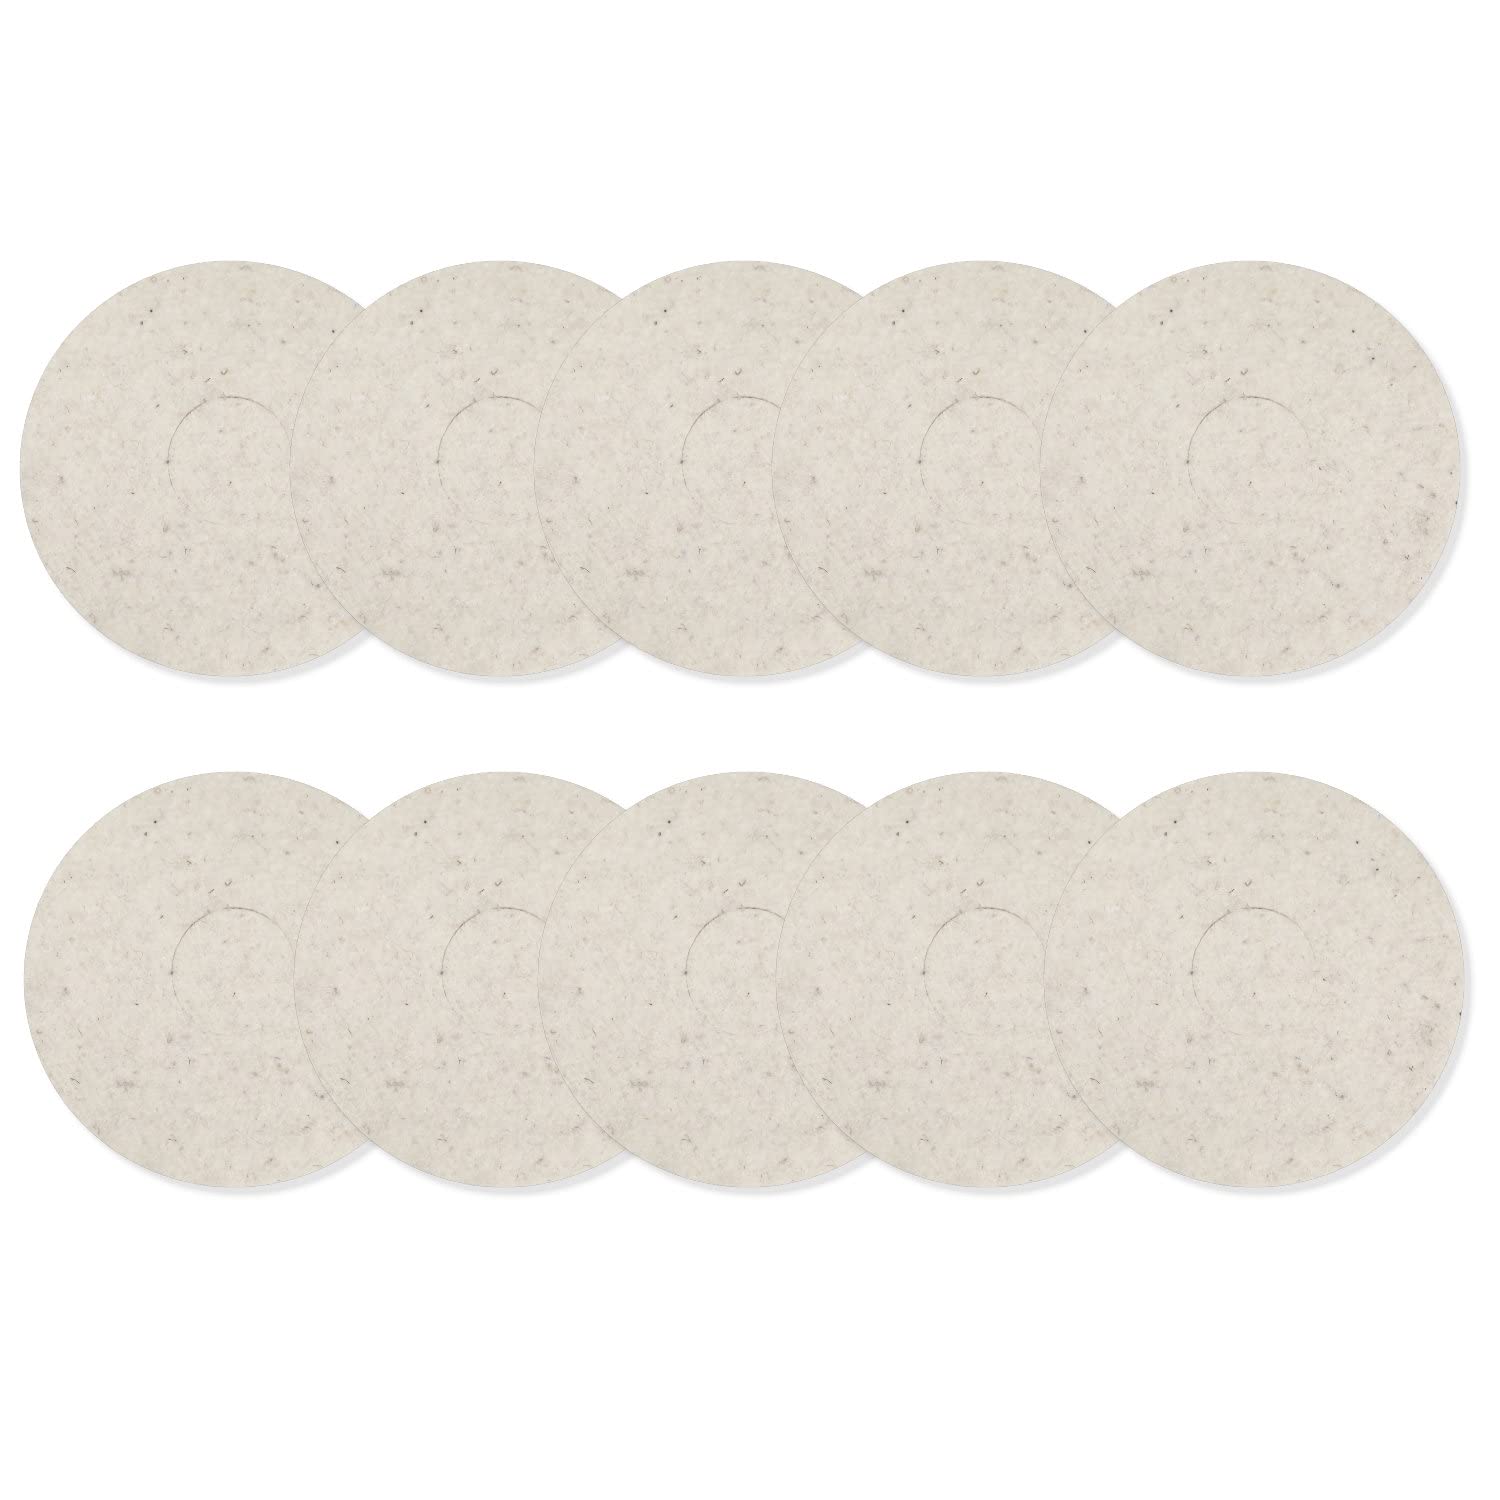 bopro Schafwollpads aus reinster Schafschurwolle - ideal zum Nachölen und Auspolieren - 12 Zoll ideal für Floorboy - Einscheibenmaschinen (10)